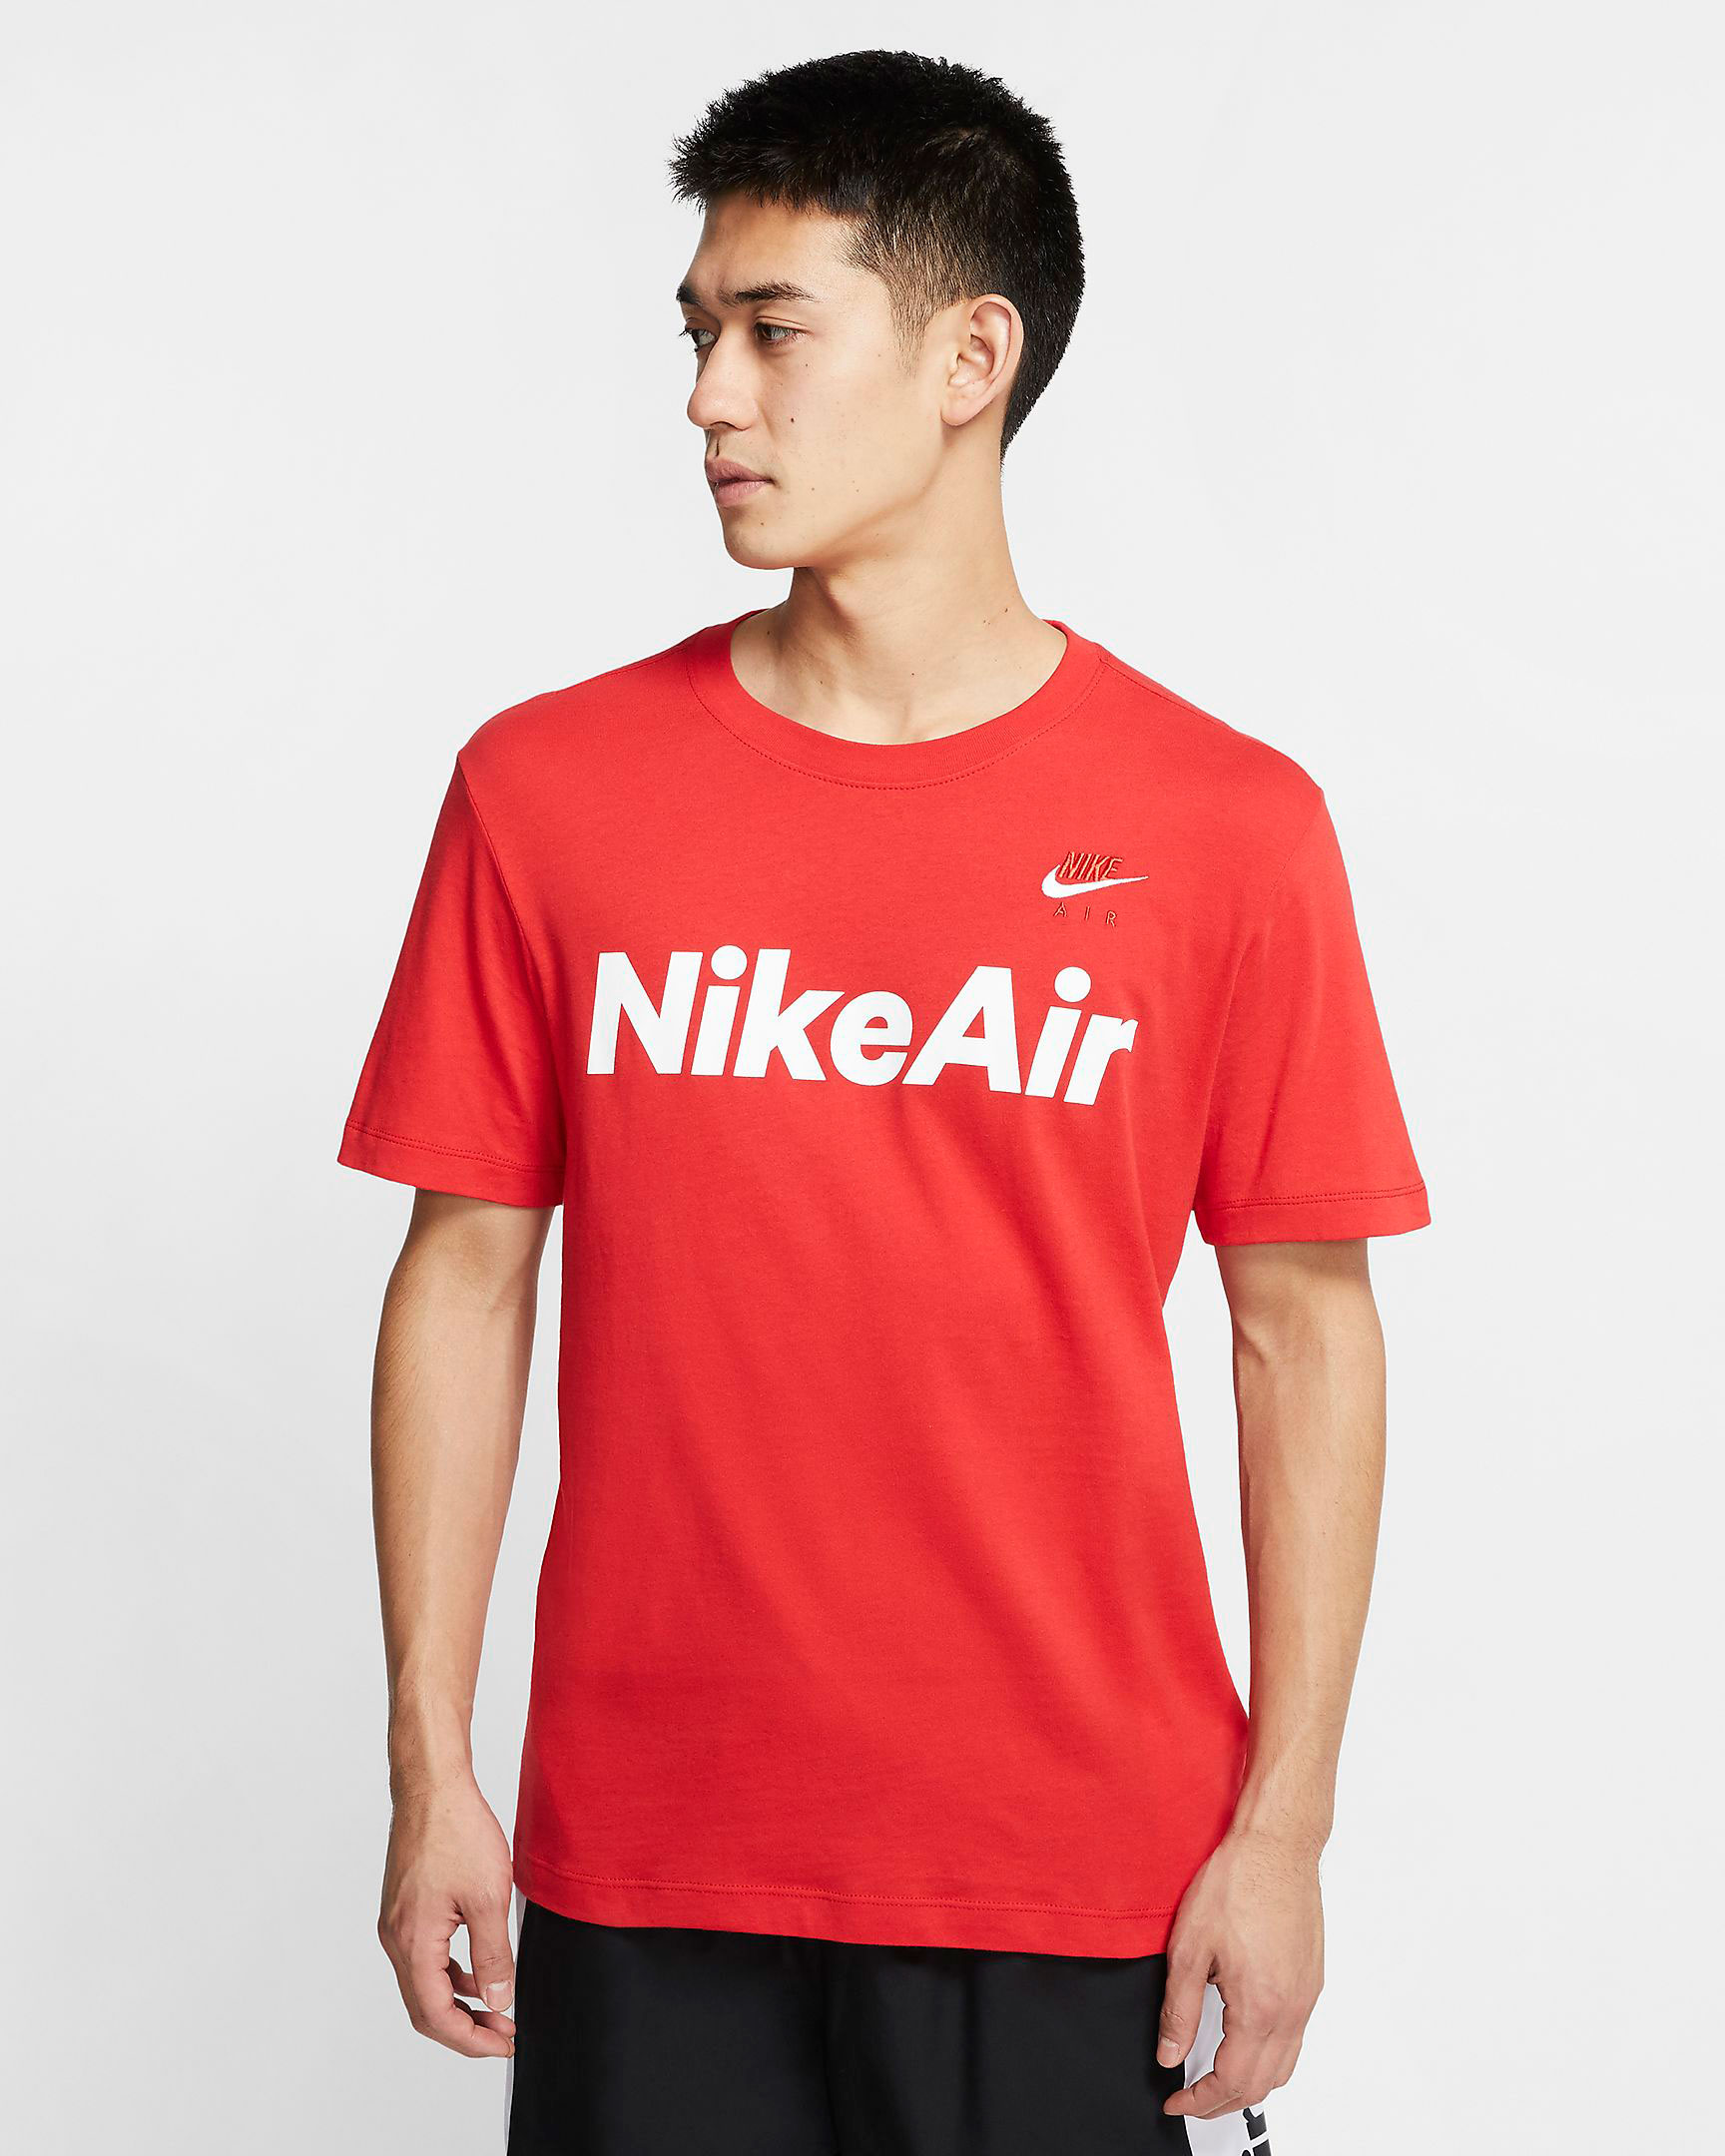 nike-air-shirt-red-white